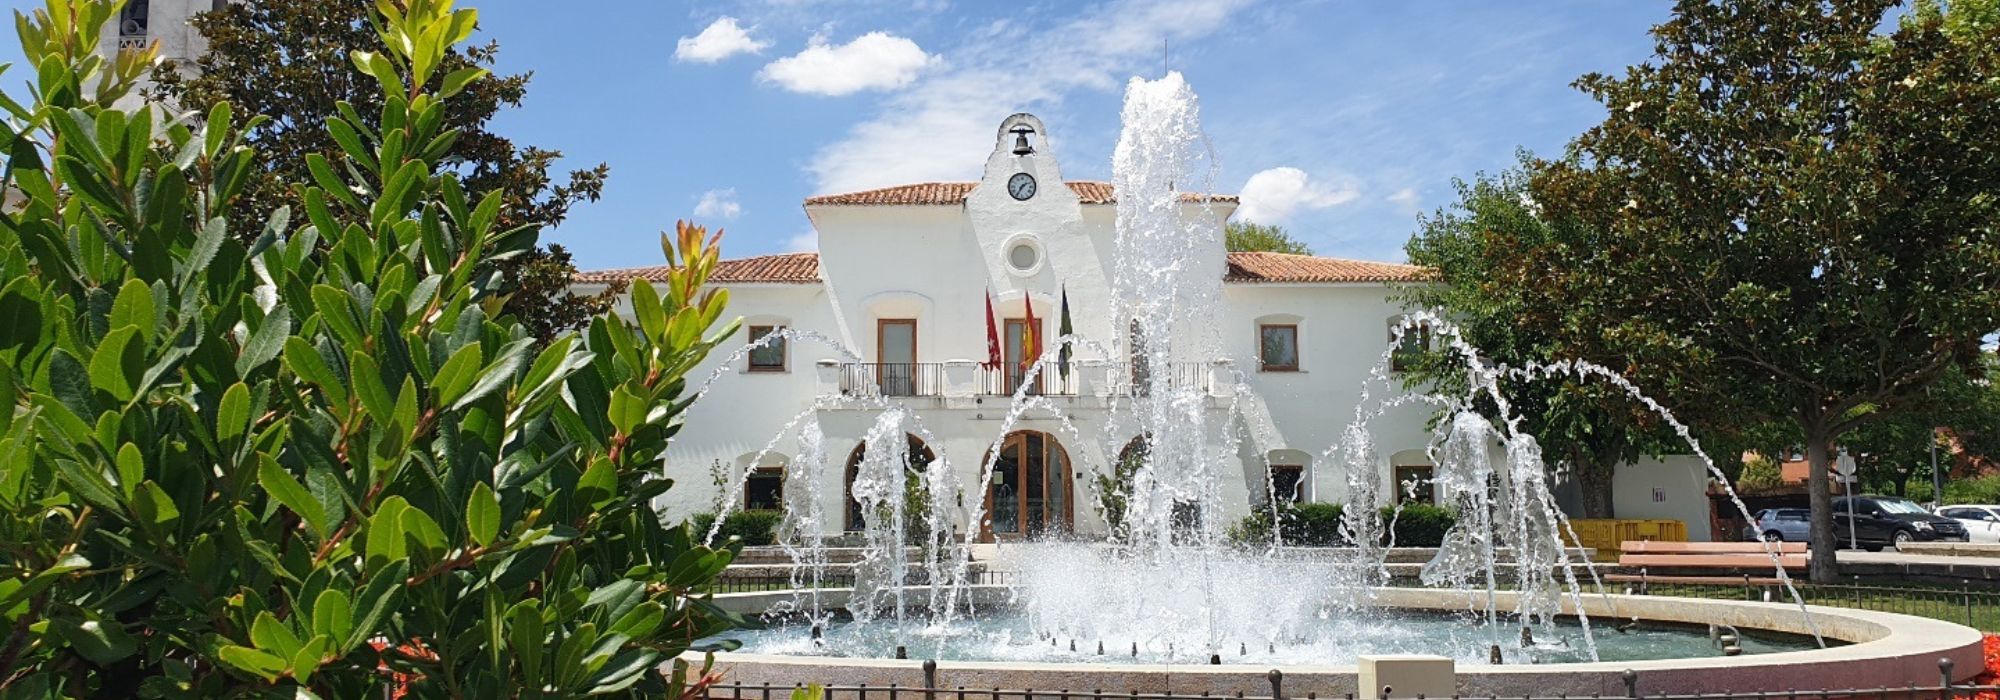 1. Ayuntamiento de Villanueva de la Caada